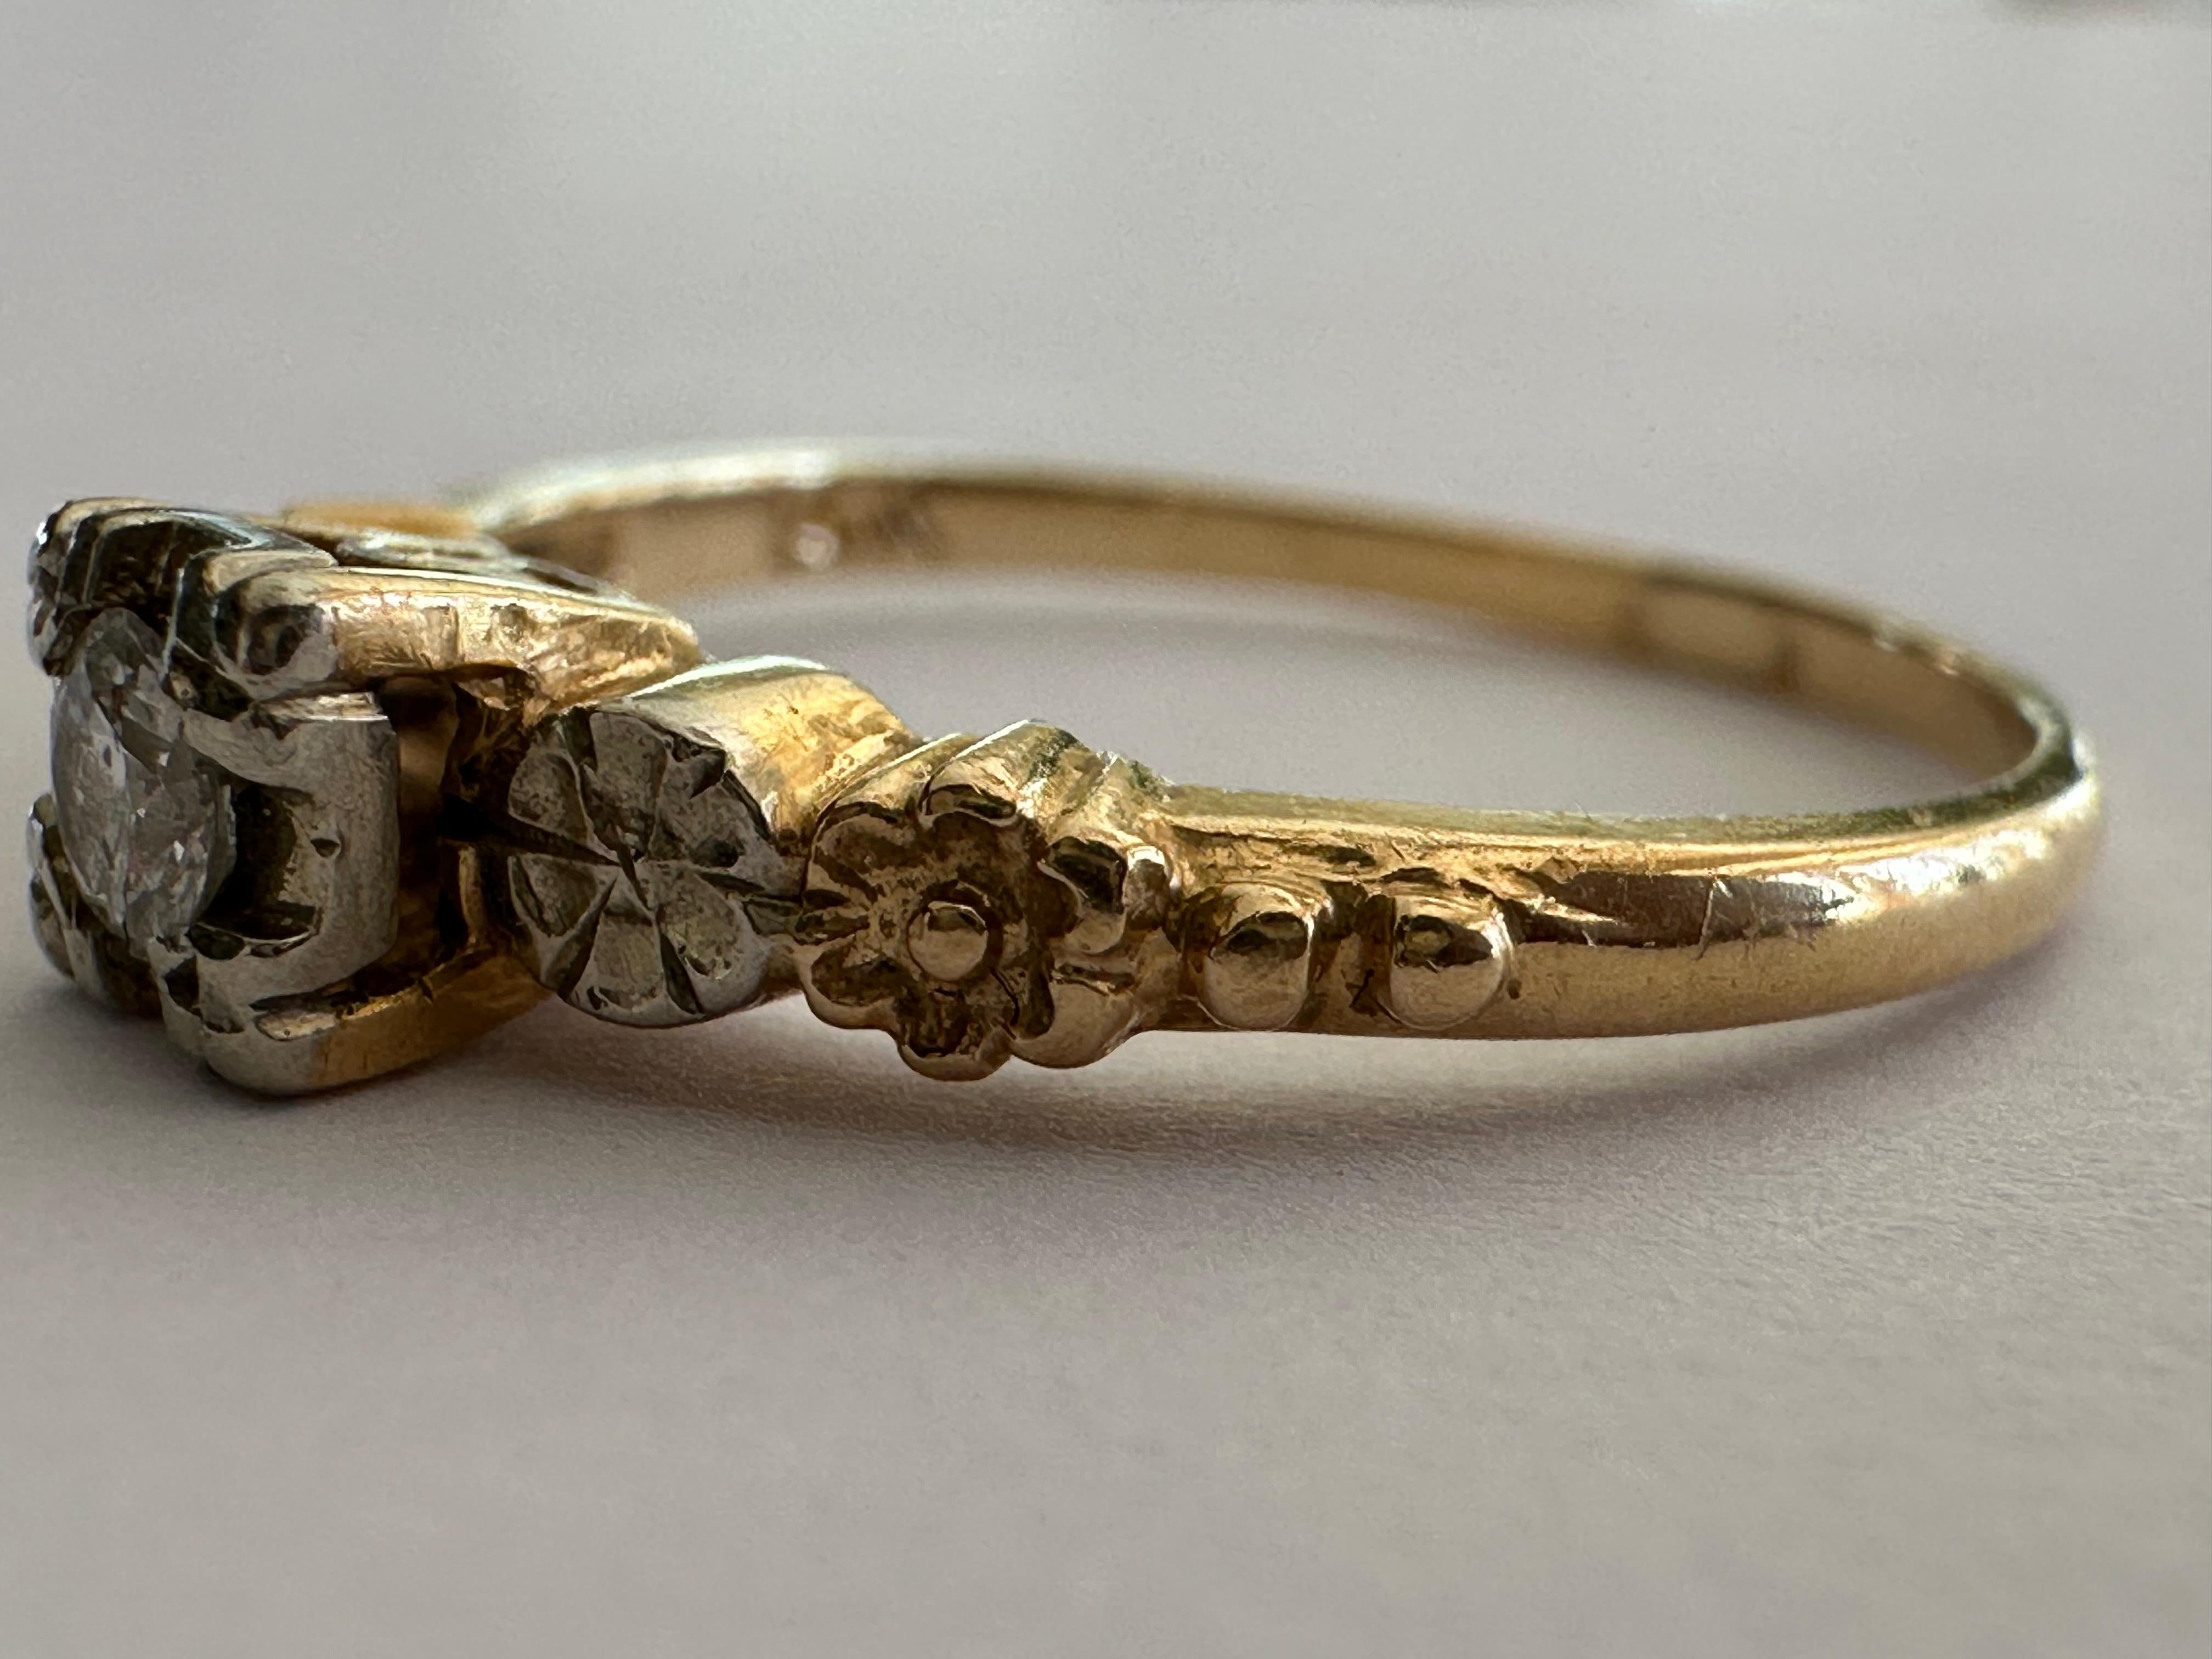 Un diamante talla vieja europea centra este anillo solitario de mediados de siglo de aproximadamente 0,10 quilates, color G claridad SI2, acentuado por flores grabadas a mano a cada lado engastadas en oro blanco y amarillo de 14 quilates bicolor.  
